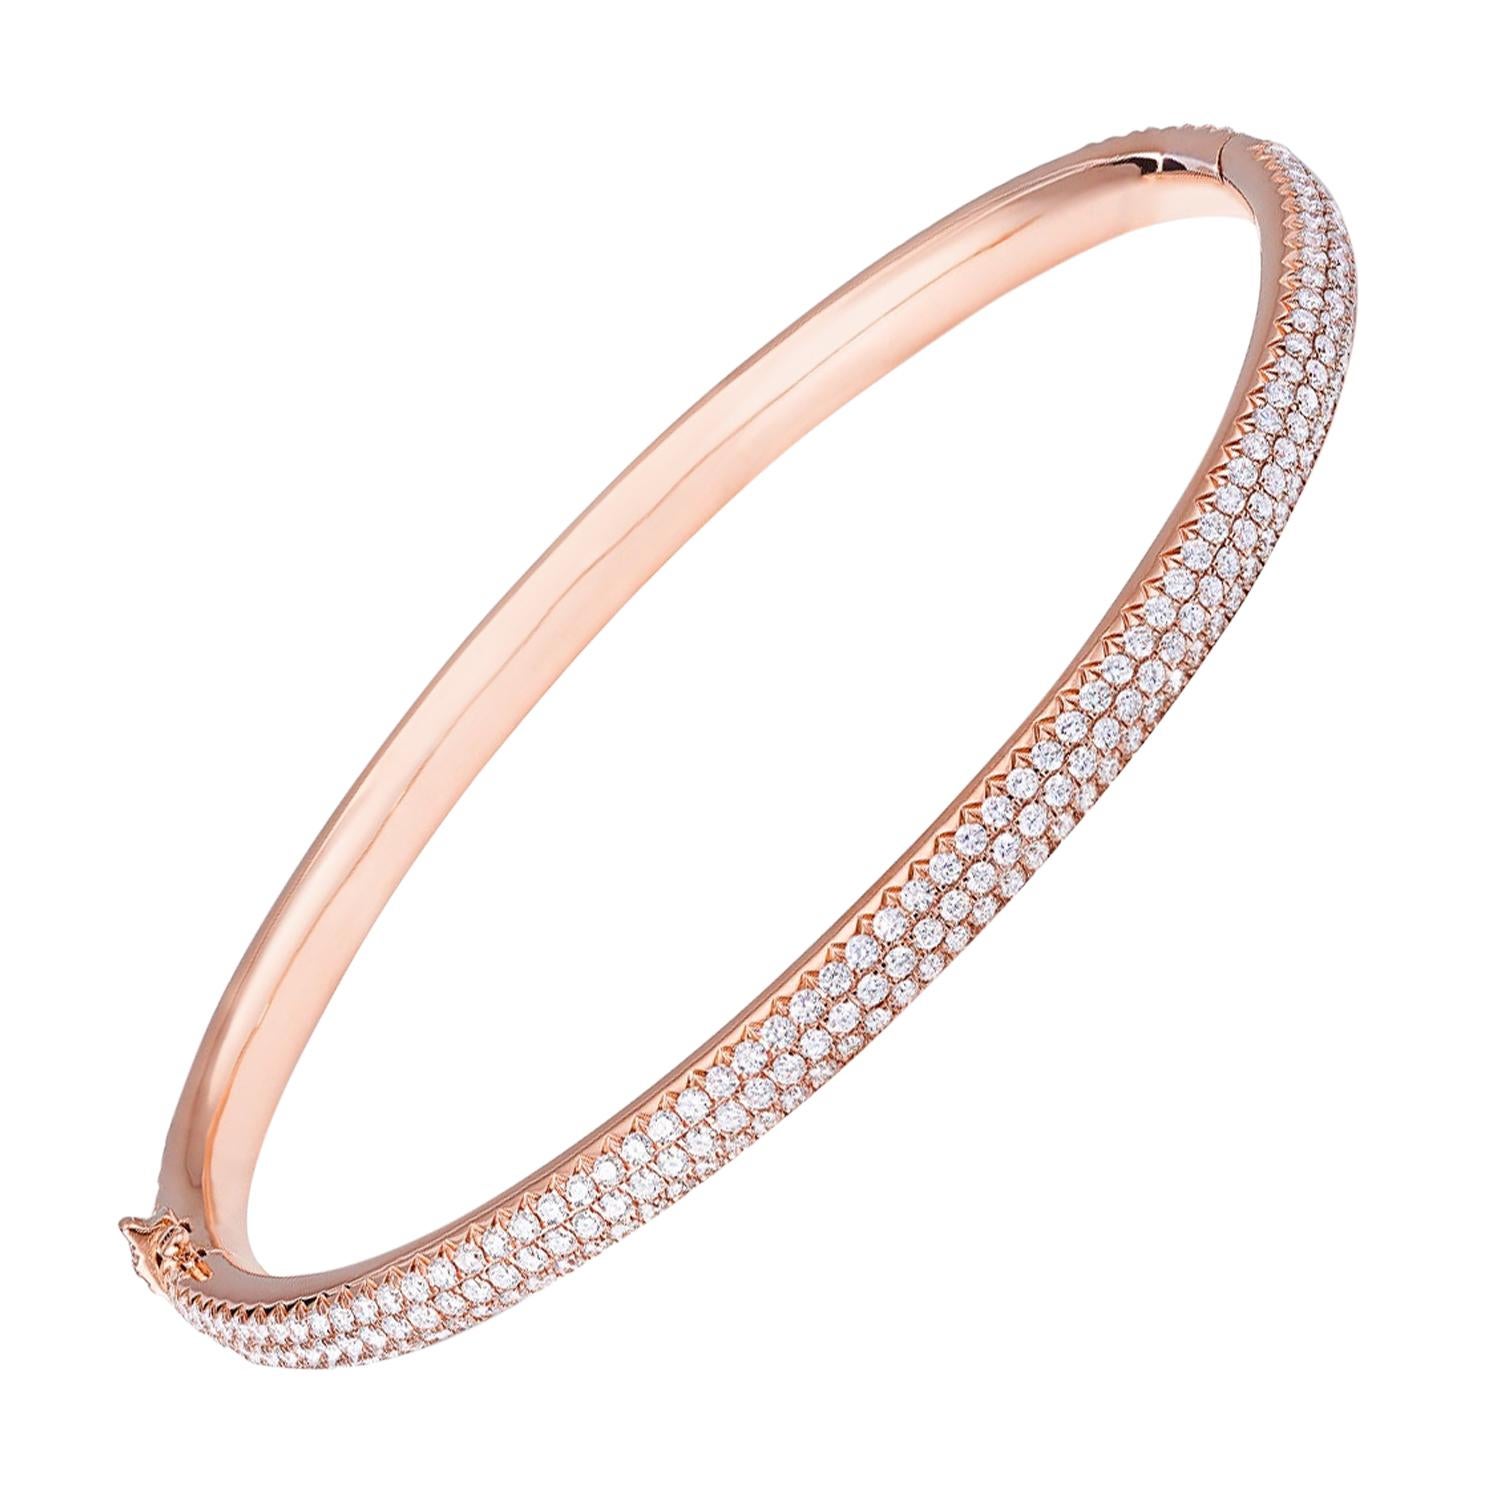 64Facets 2.75 Carat Pave Diamond Bangle Bracelet Set in 18 Karat Rose Gold For Sale